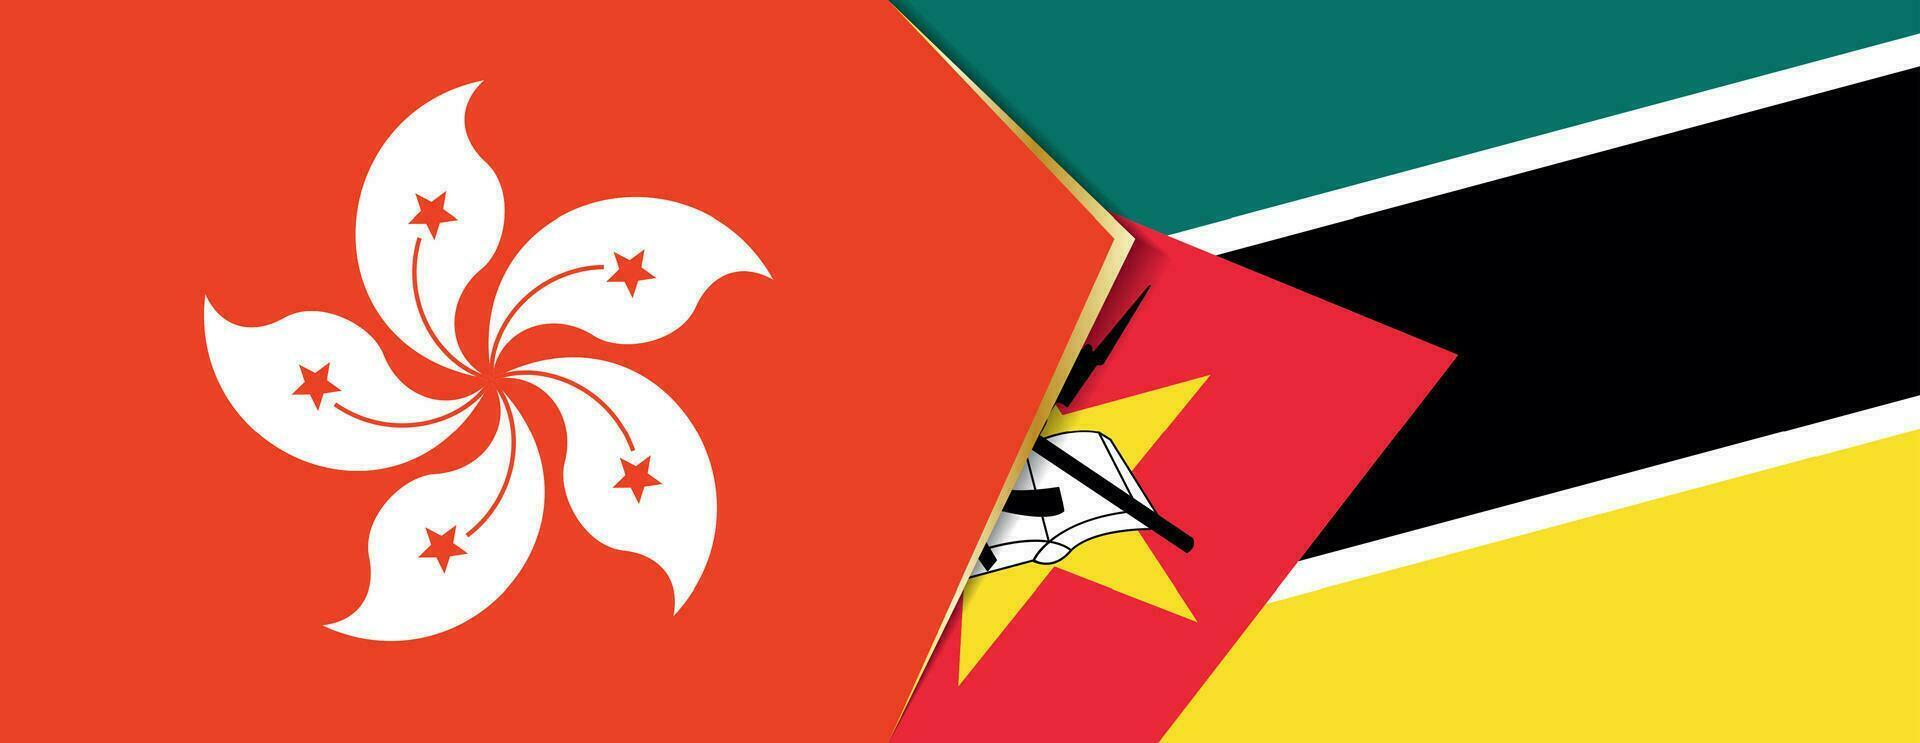 hong kong e Moçambique bandeiras, dois vetor bandeiras.